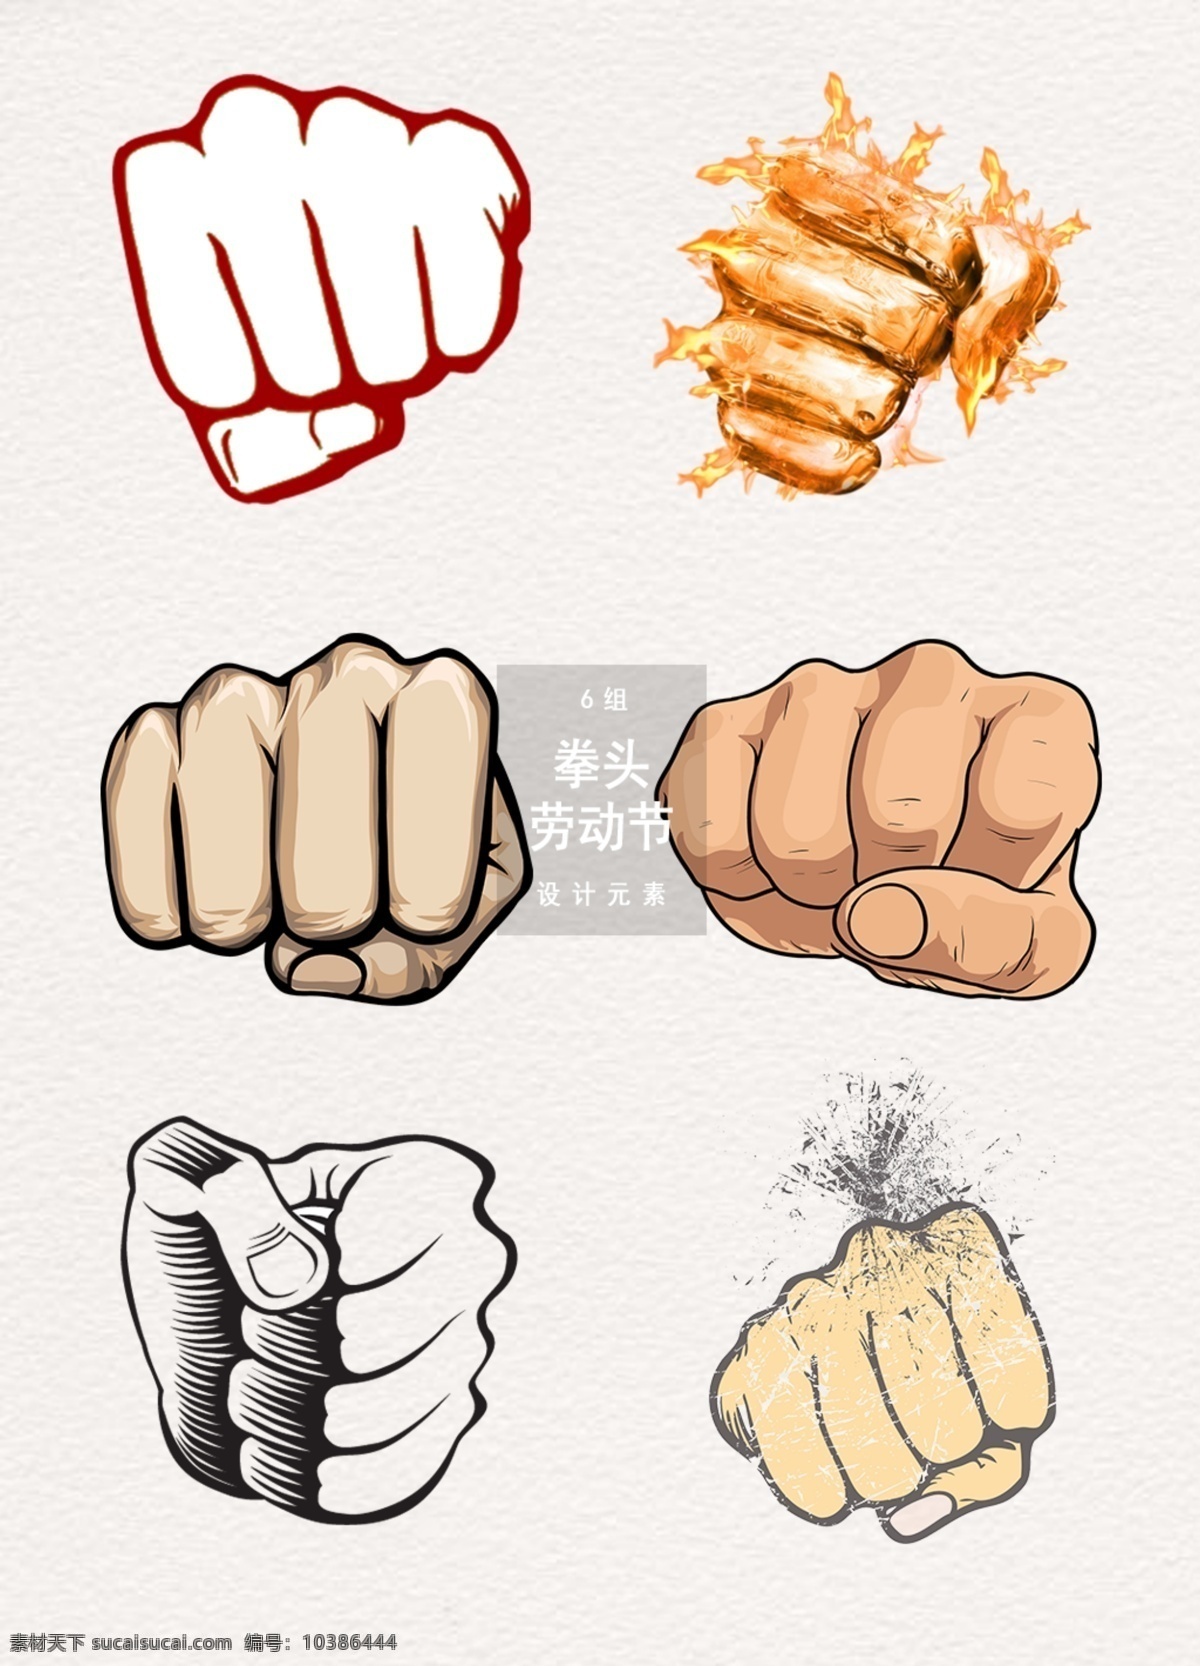 劳动节 拳头 展示设计 元素 握拳 拳头装饰 拳头图案